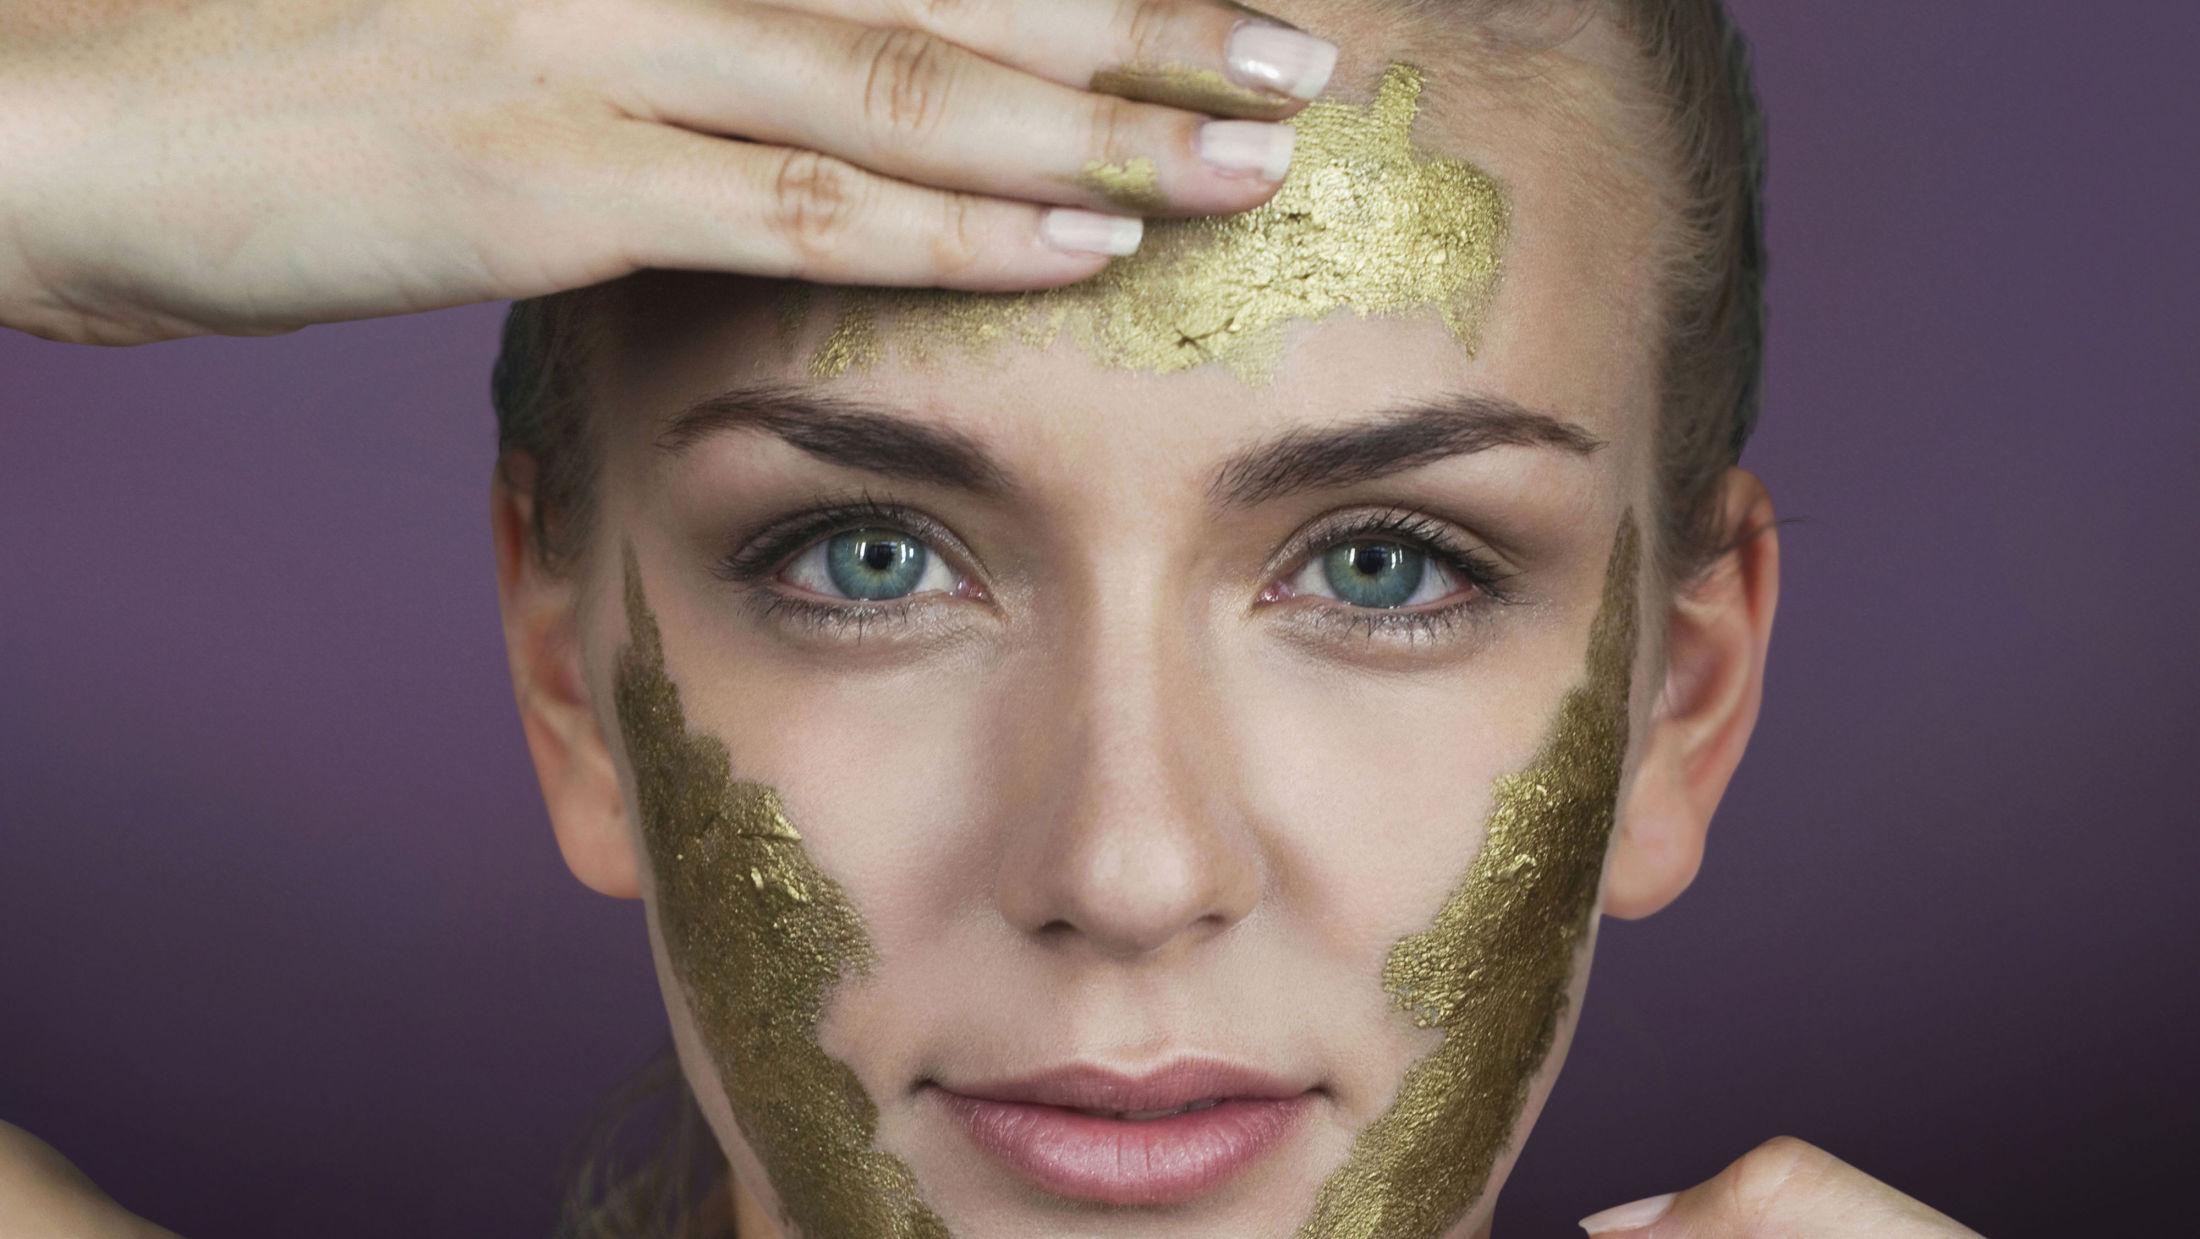 PASS PÅ: Selv om masken ser ut som gull, trenger den ikke inneholde det, advarer hudpleier. Foto: Getty Images.